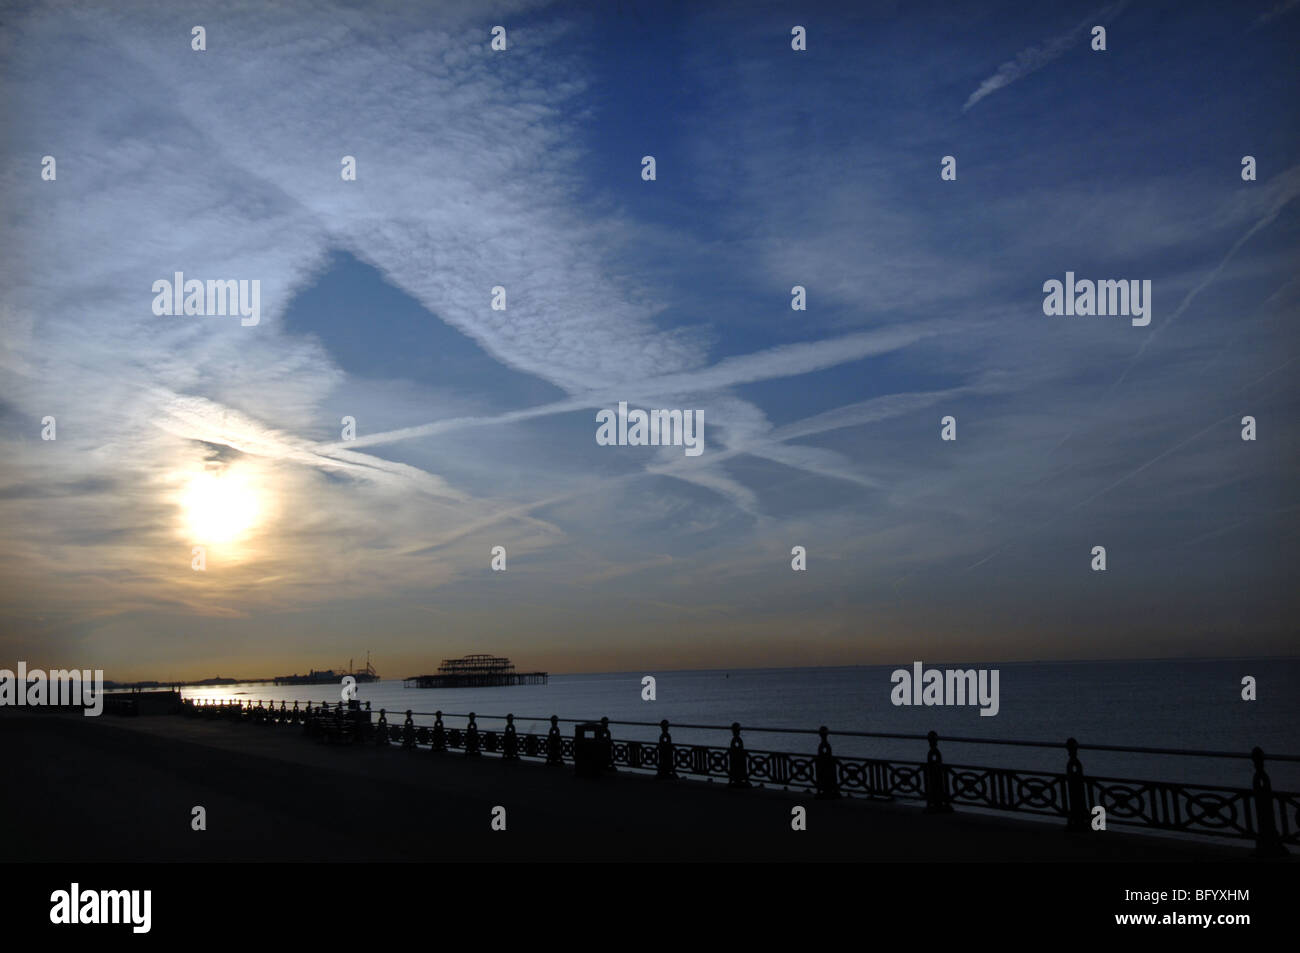 Amanecer en Brighton Seafront con rayas en jet sky y el West Pier silueta en la distancia. Foto de stock